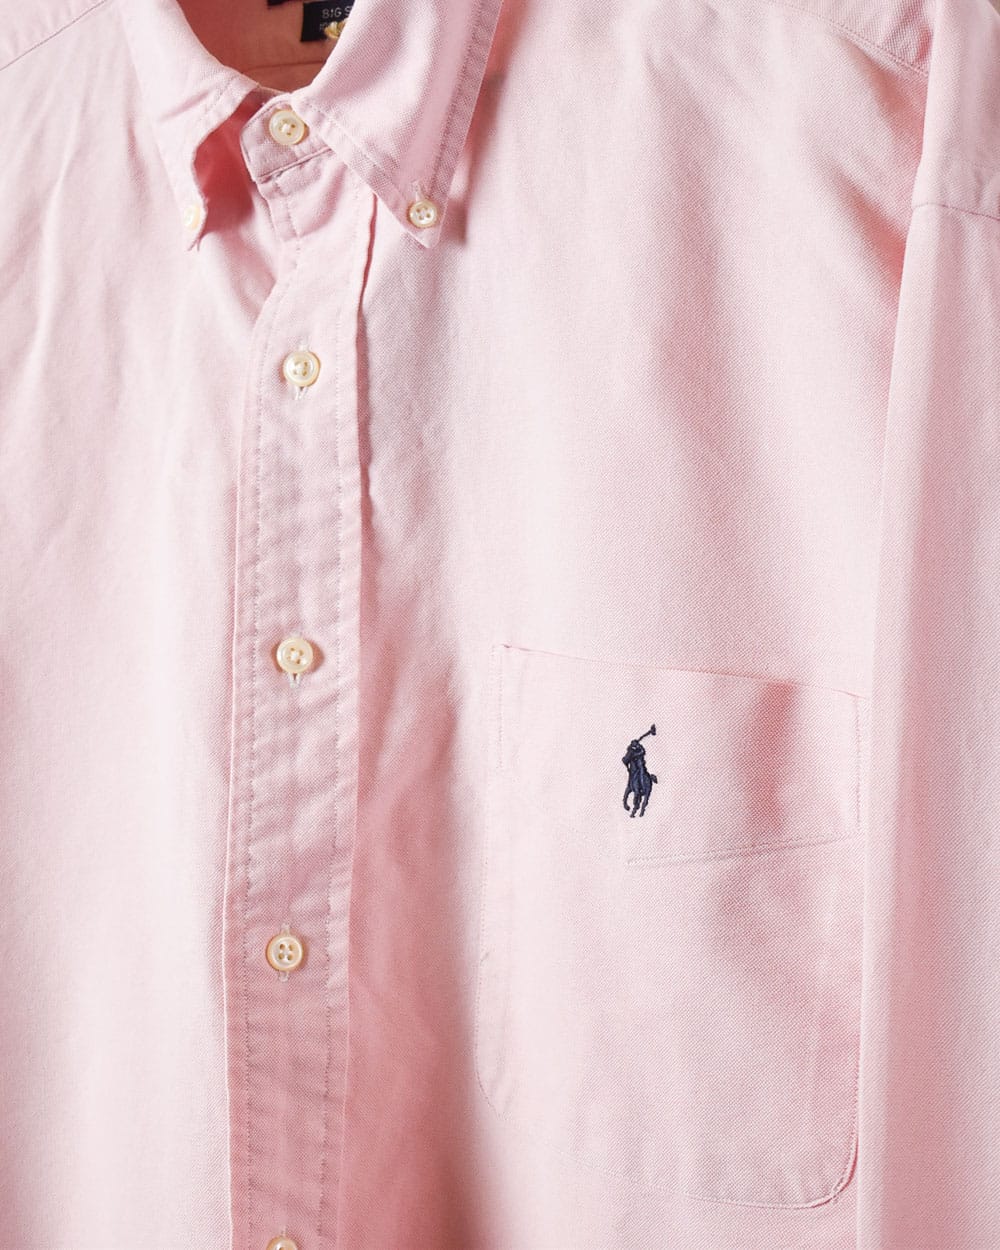 Pink Polo Ralph Lauren Big Shirt - Medium